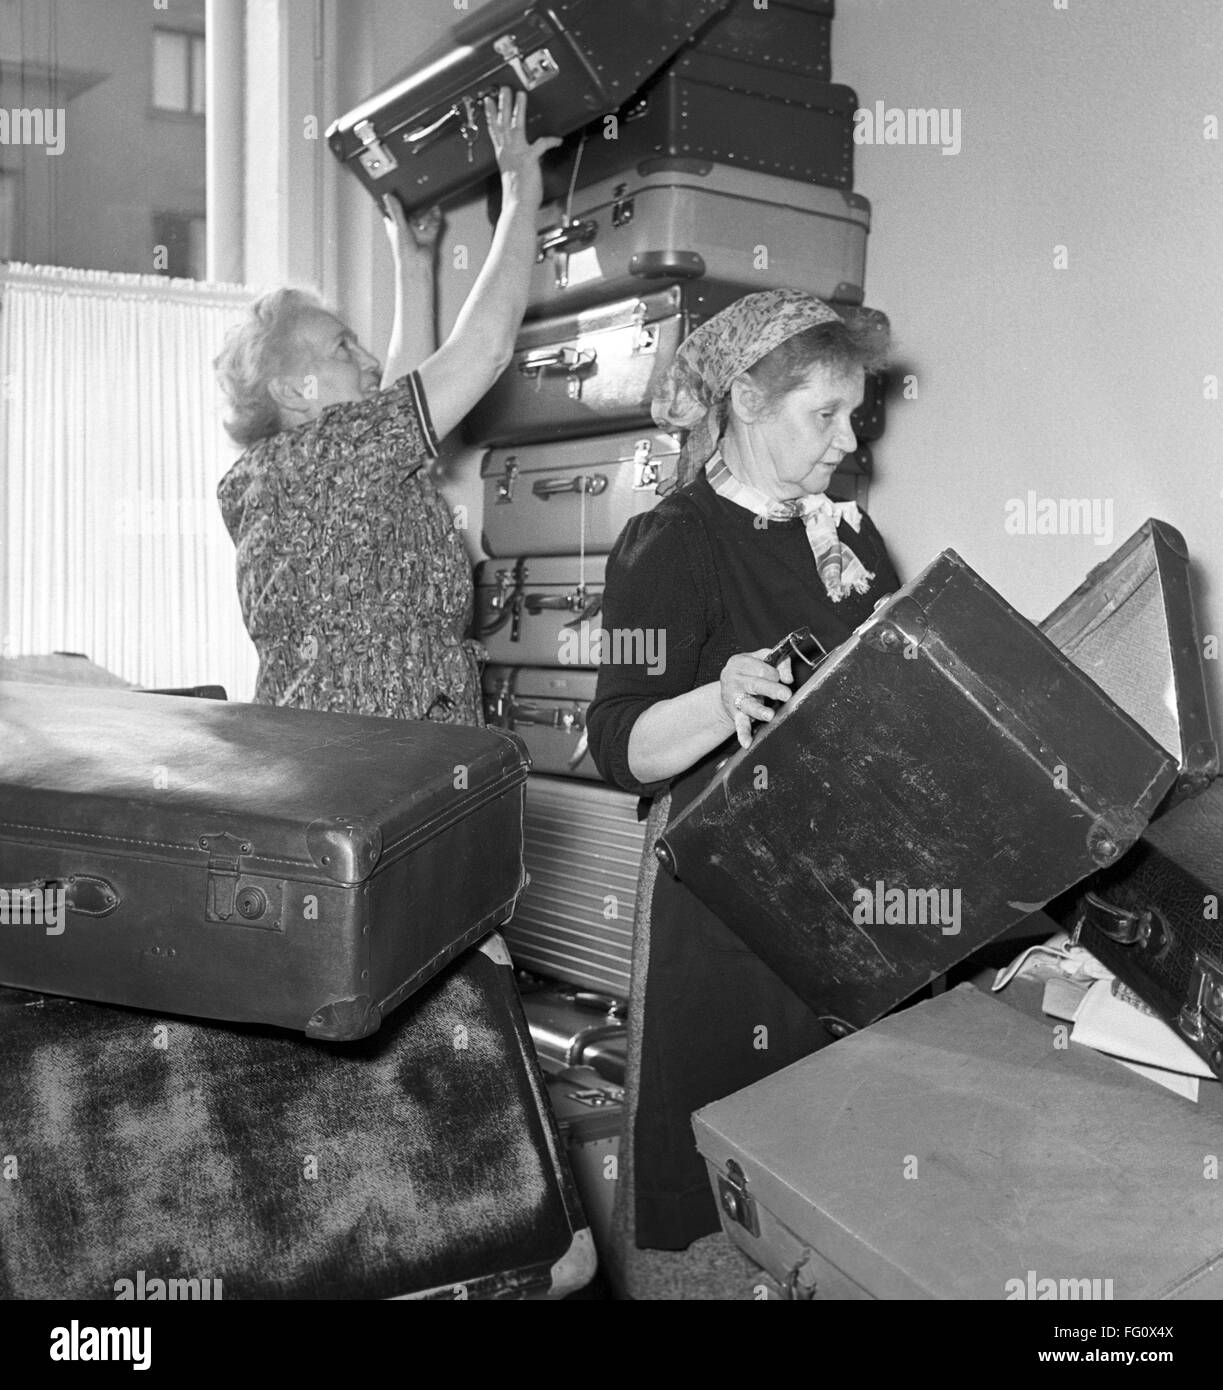 Croce Rossa tedesca lavoratori a Francoforte nel novembre 1956 con donato valigie per rifugiati ungheresi. A causa del mettere giù la rivoluzione ungherese nel 1956 da parte delle forze sovietiche circa 200.000 persone sono fuggite la contea verso l'Occidente. Foto Stock